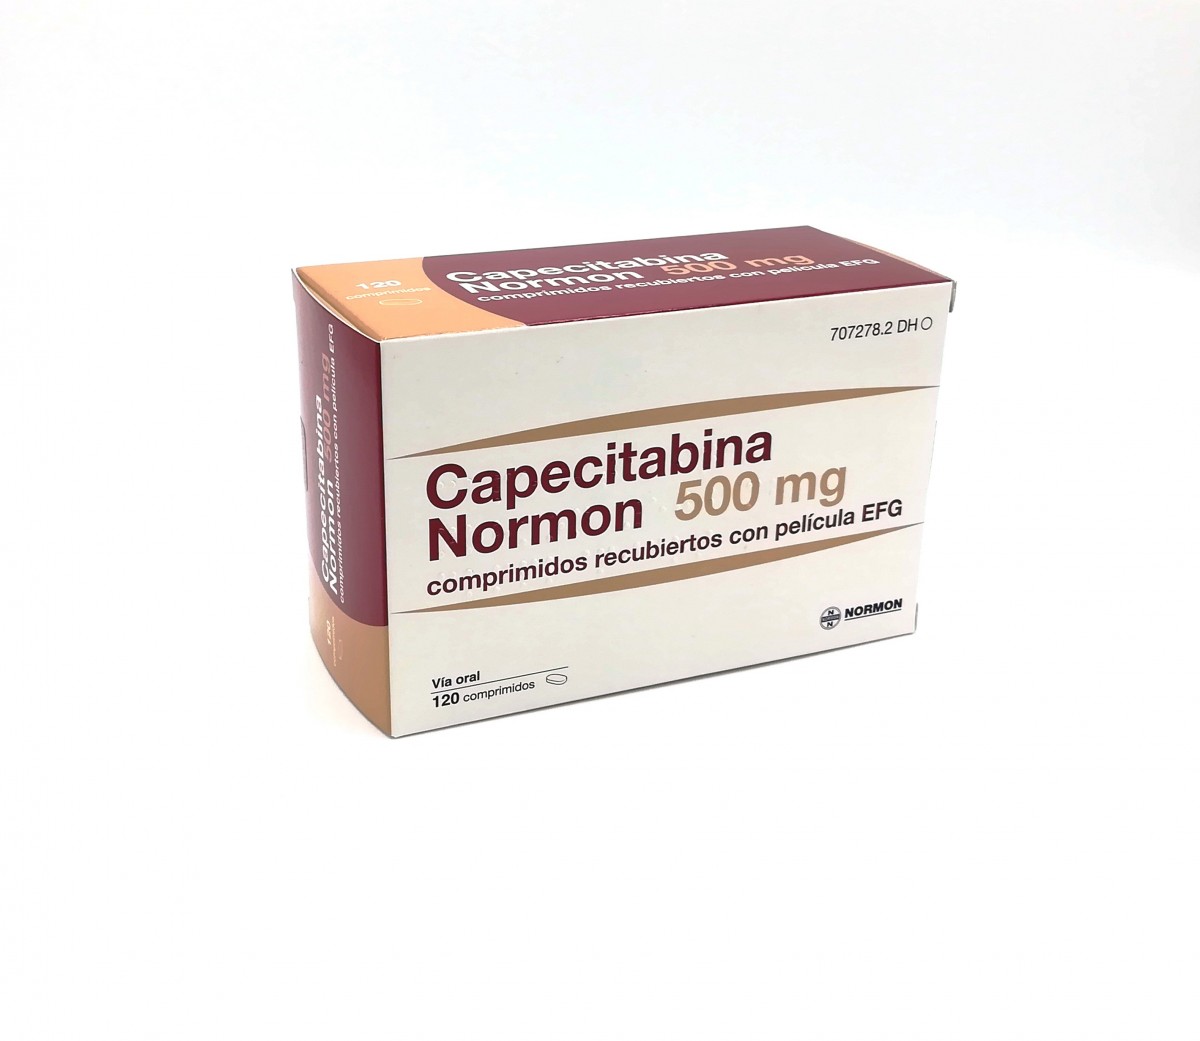 CAPECITABINA NORMON 500 MG COMPRIMIDOS RECUBIERTOS CON PELICULA EFG , 120 comprimidos fotografía del envase.